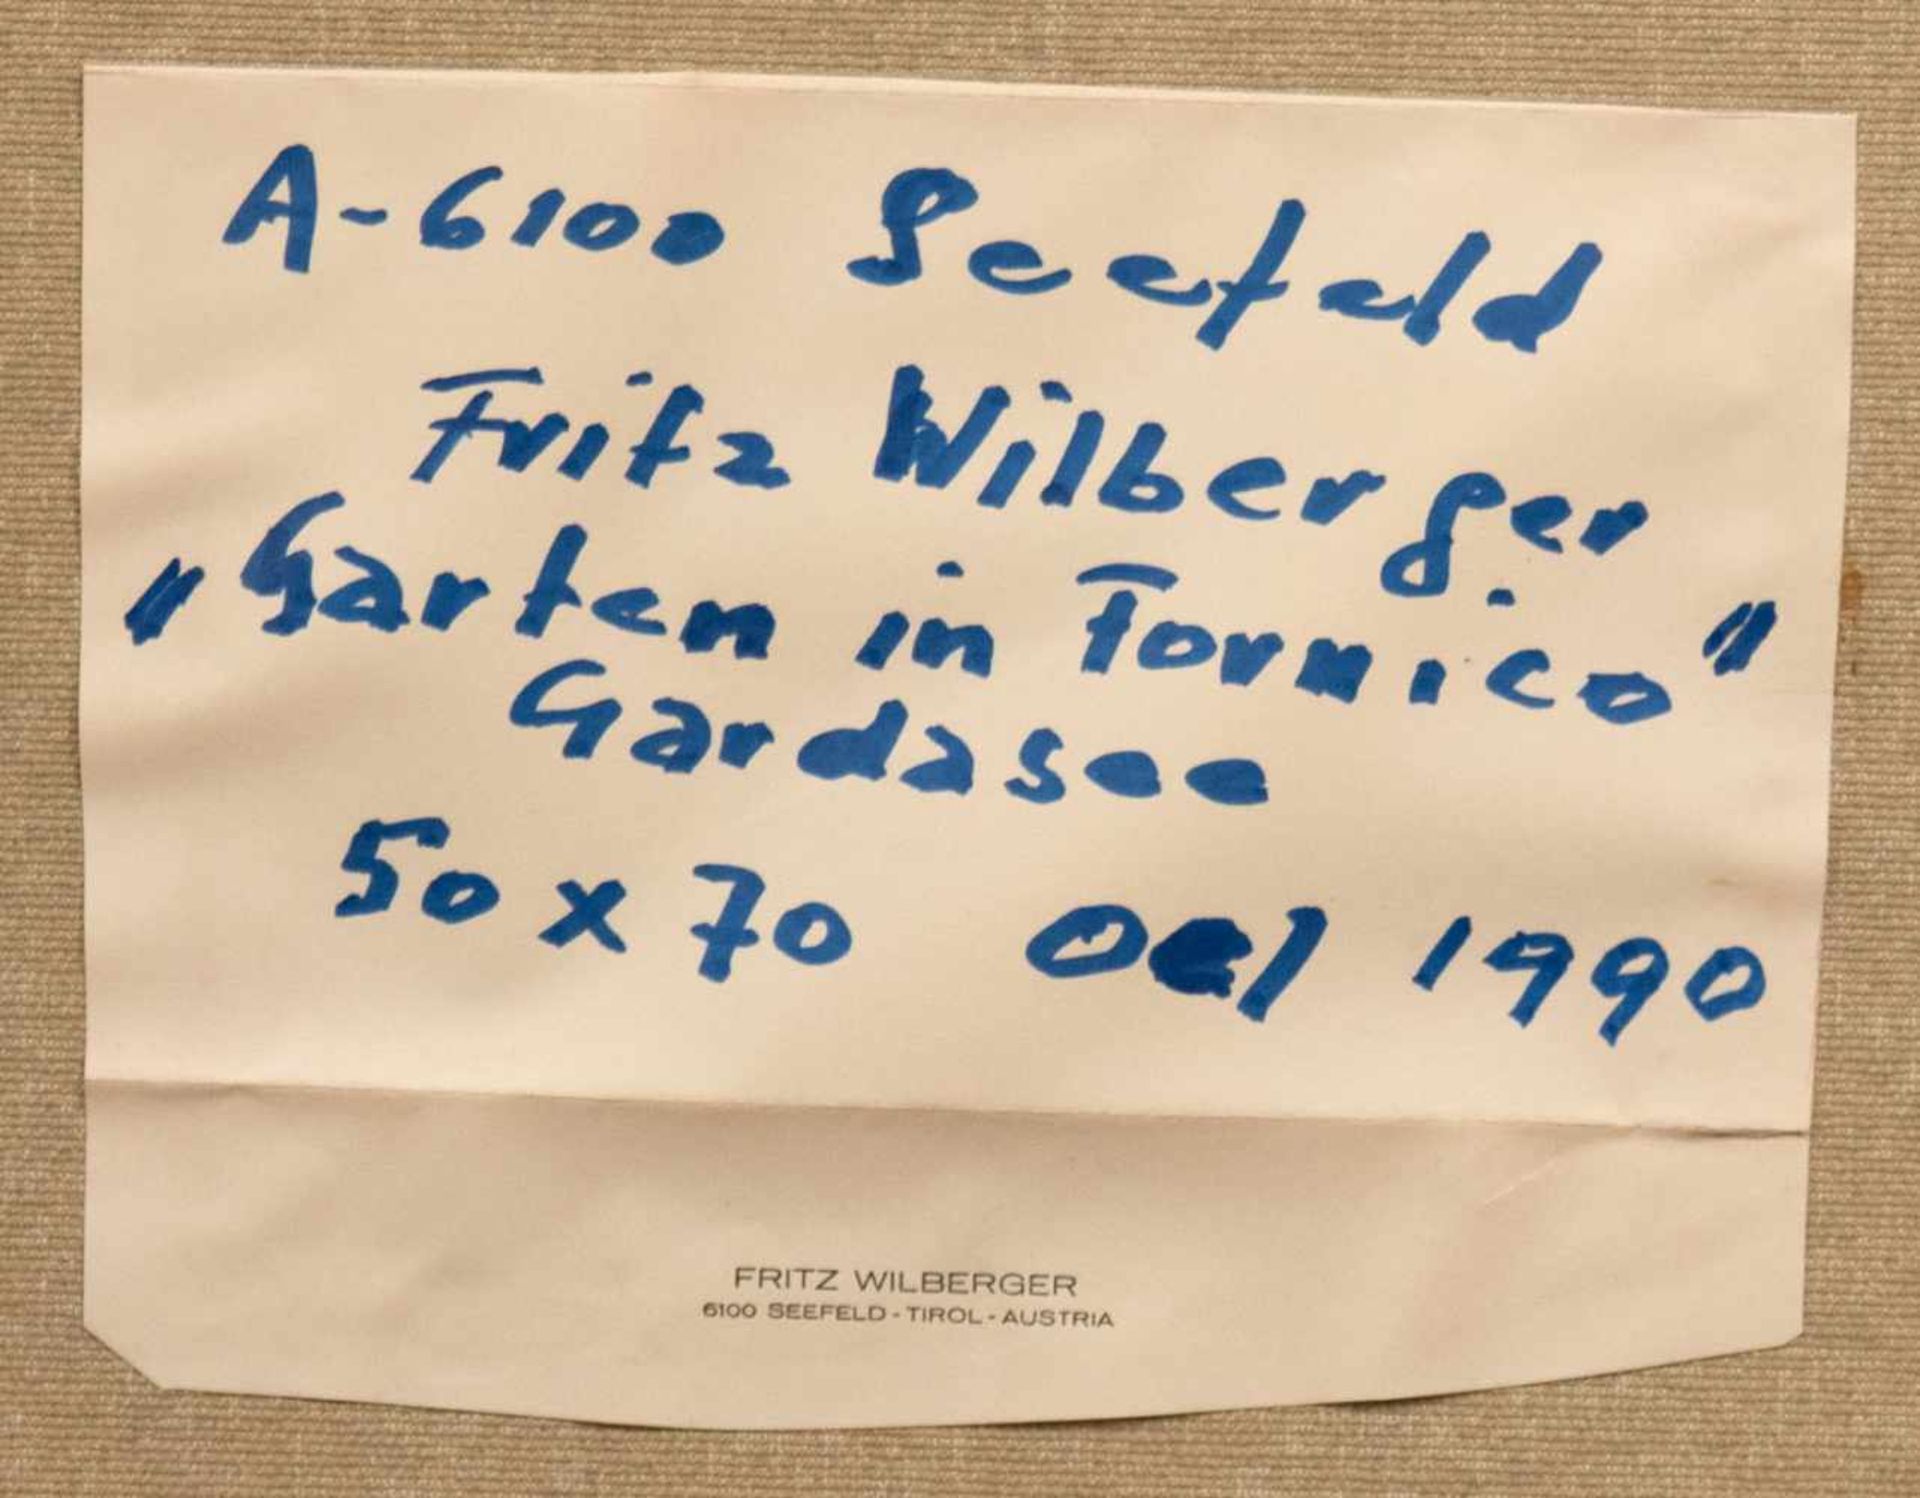 Wilberger, Fritz "Garten in Fornico Gardasee", Öl/Lw., sign. u.r. und dat. 1990, 51x70 cm, - Image 4 of 5